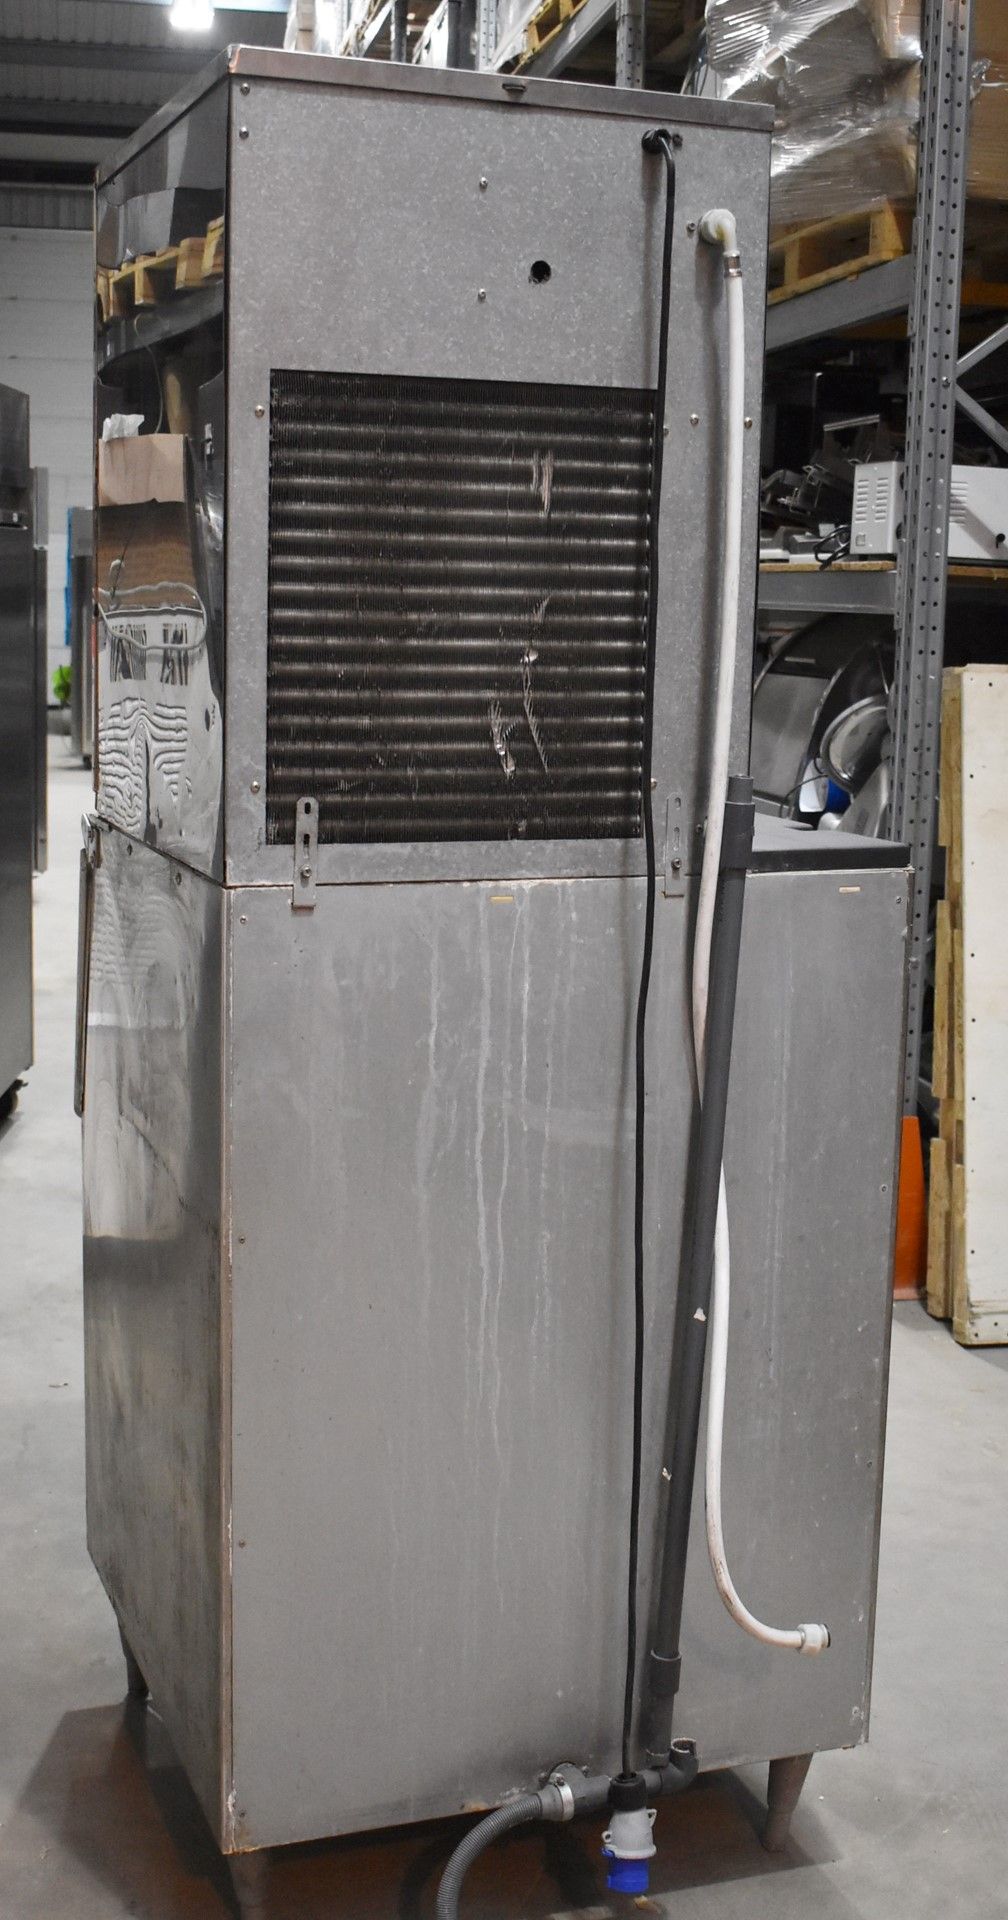 1 x Hoshizaki FM-480AFE Ice Machine - Produces Upto 480kg of Ice Flakes Per Days - Includes Large - Image 11 of 12